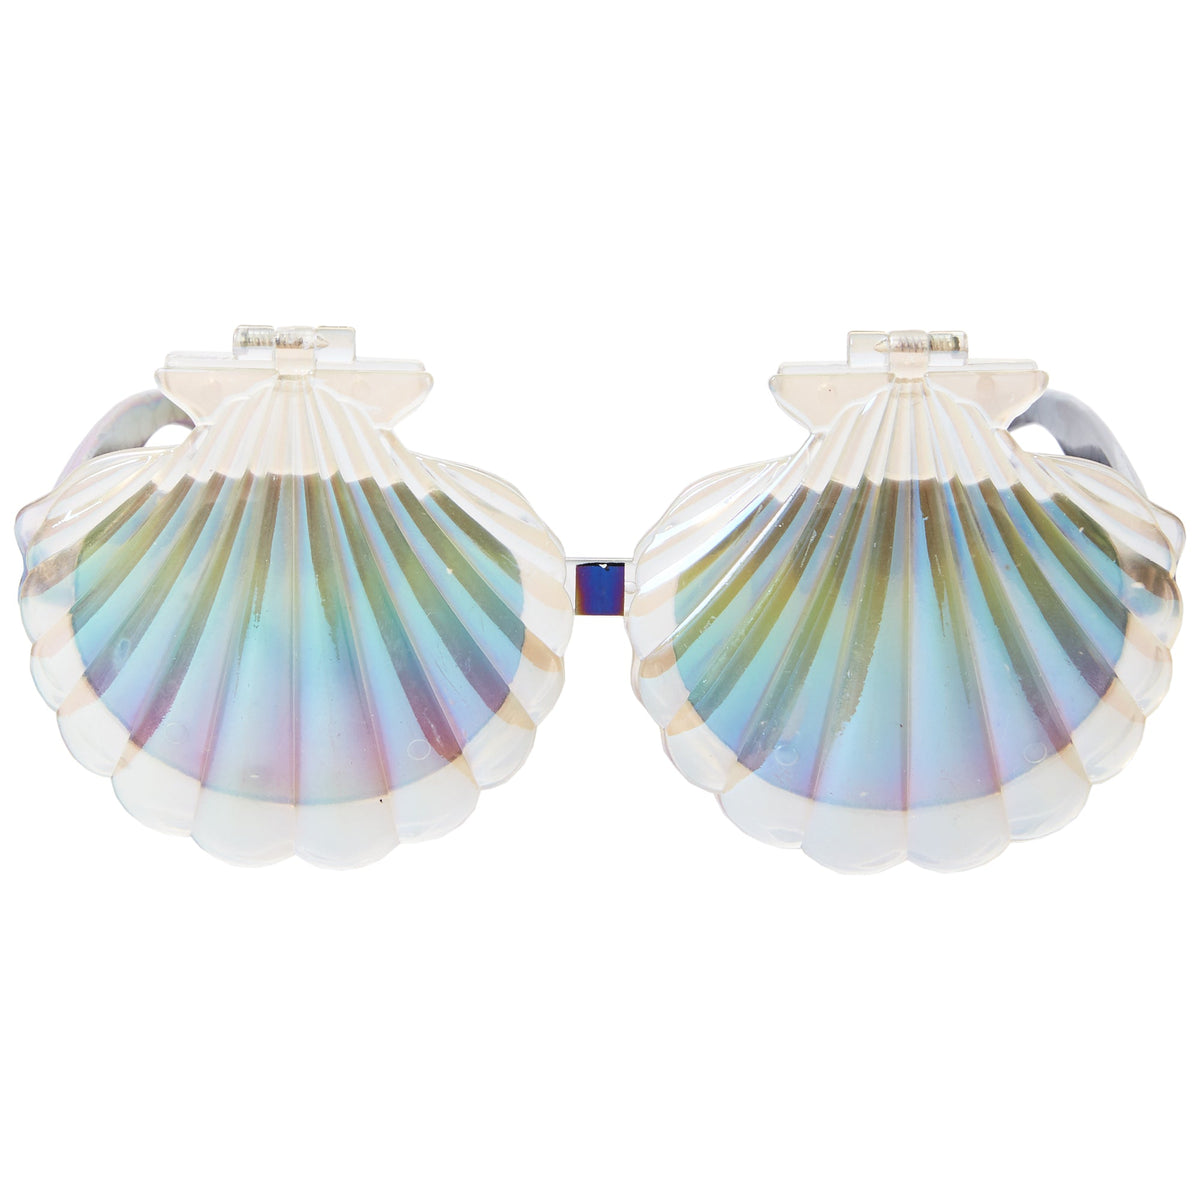 Mermaid Scallop Shell Flip Up Fun Shades® UV400 Protection